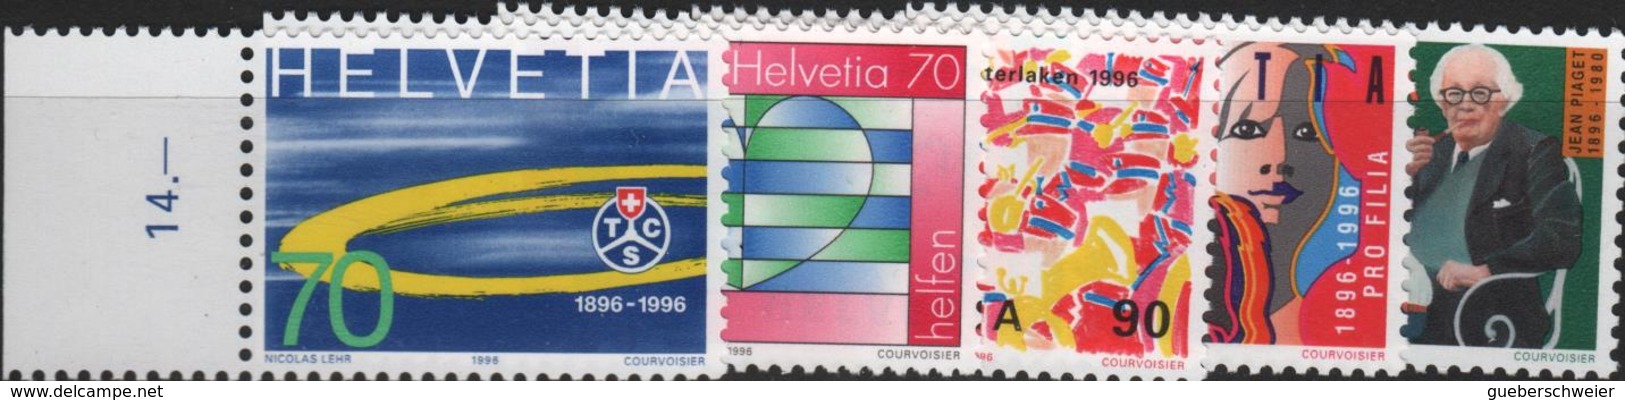 Lot de timbres de Suisse neufs** avec séries complètes, blocs de 4 et coins datés à - 40% de la faciale